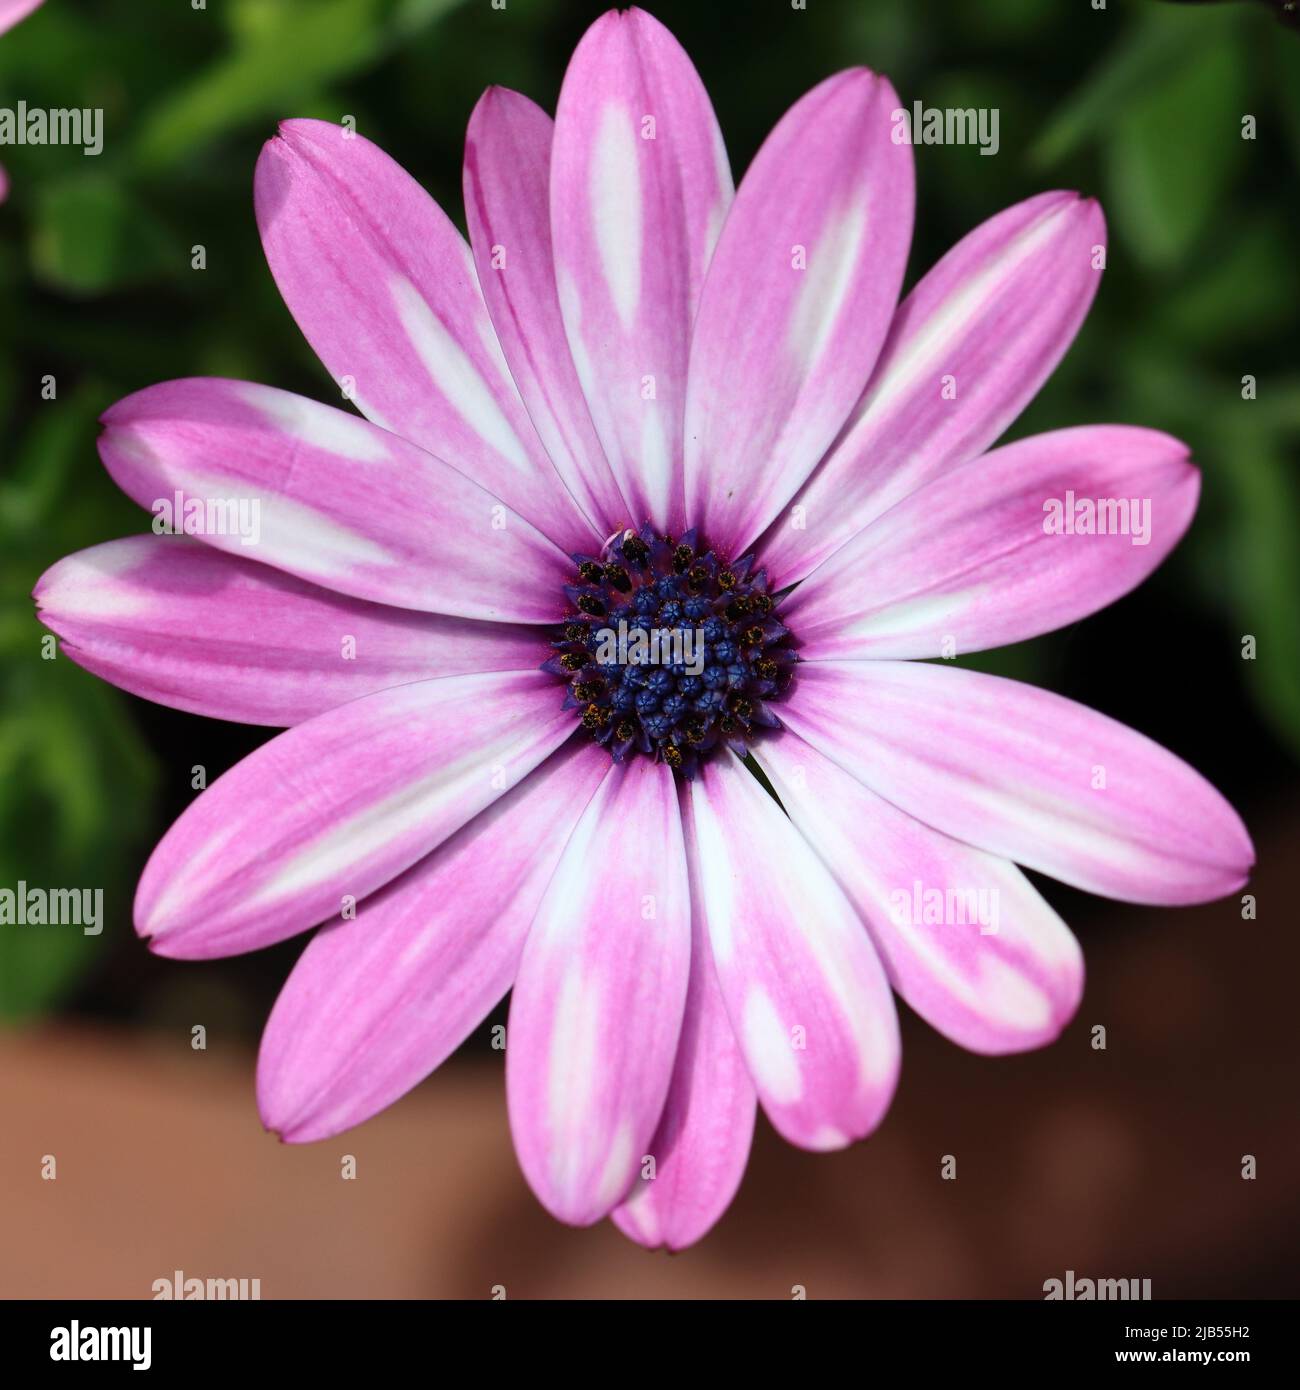 Nahaufnahme einer zweifarbigen Blume mit hellvioletten und weißen Farben, direkter Blick in die offene Blume mit ihrem dunkelvioletten Blütenzentrum Stockfoto